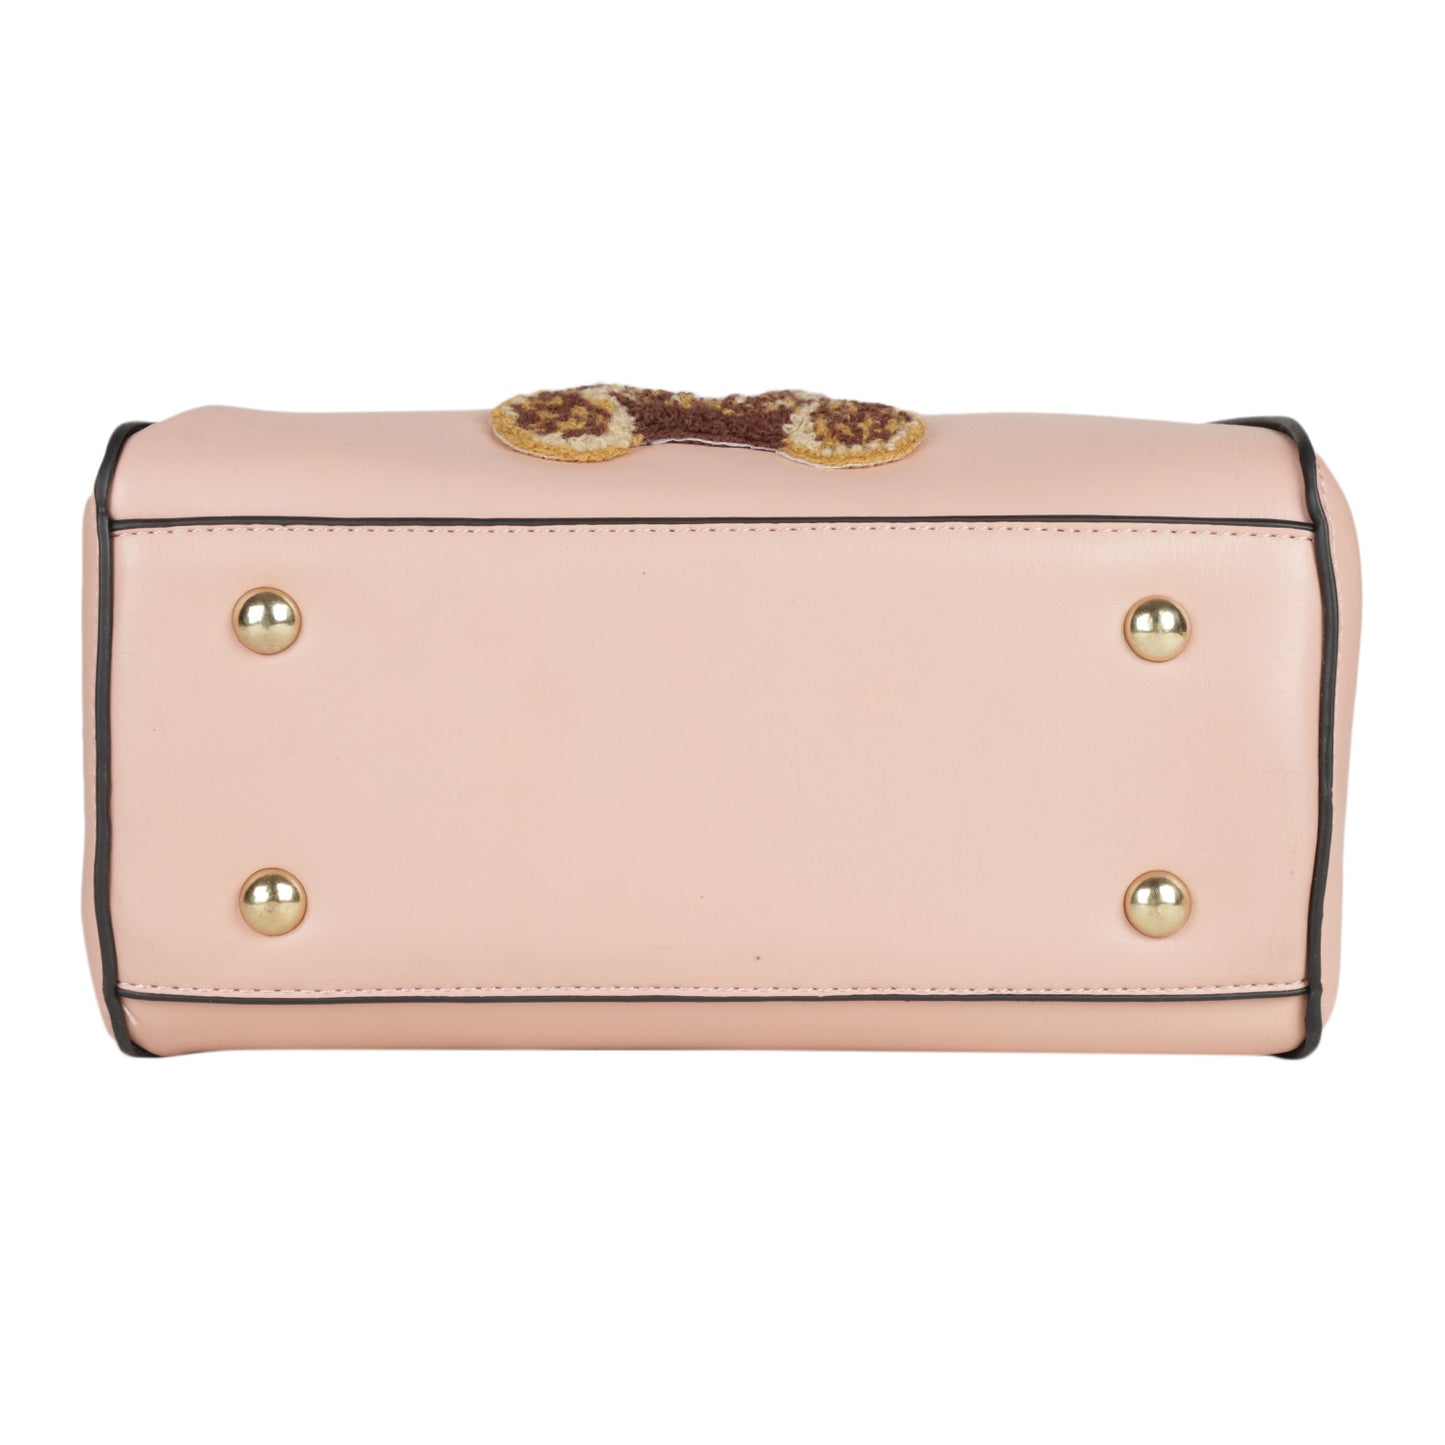 MINI WESST Women's Pink Handbags(MWHB098PK)